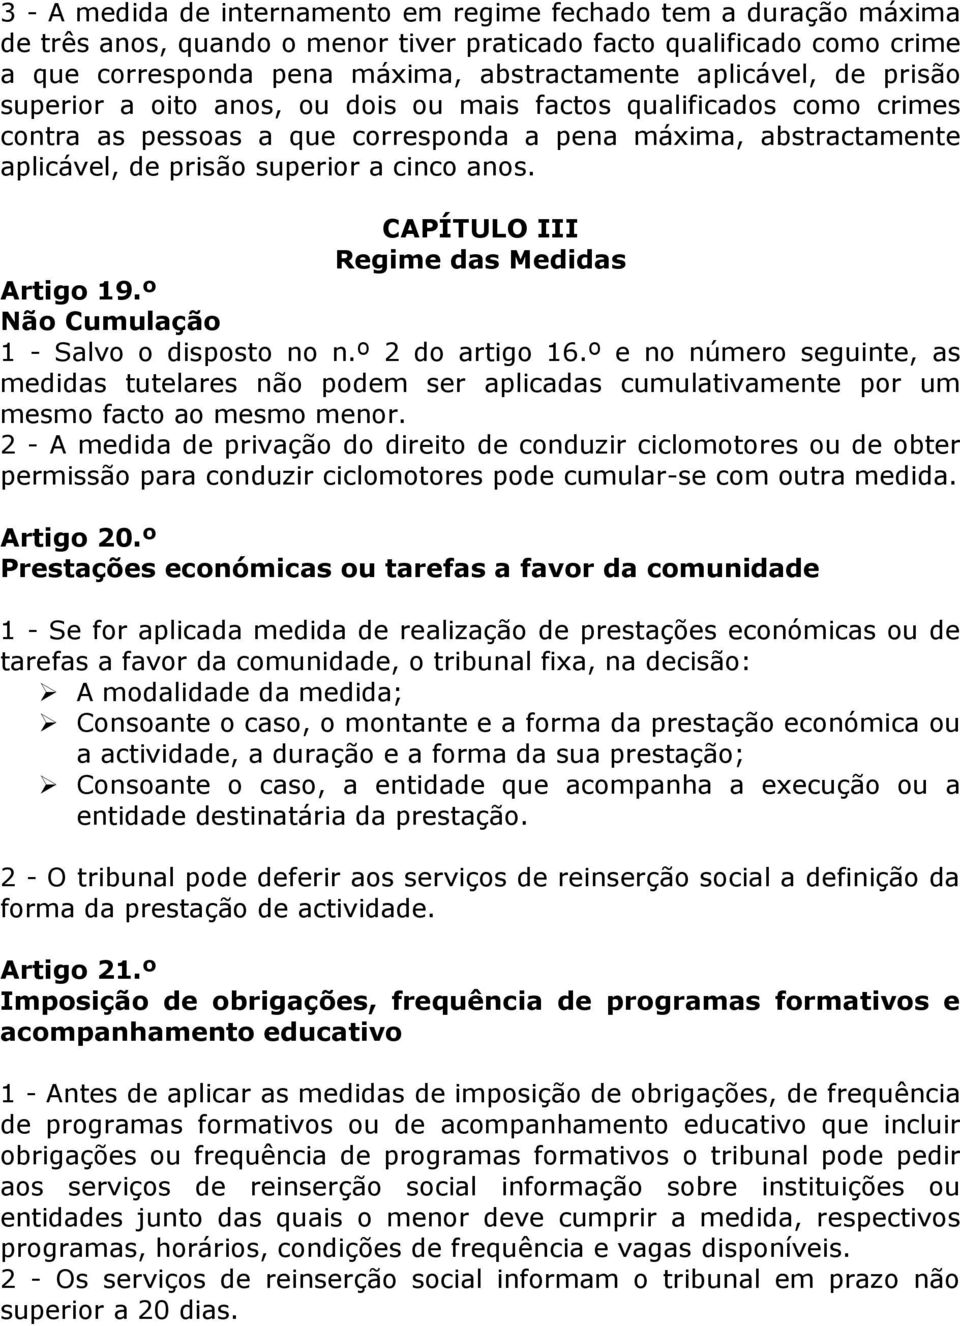 CAPÍTULO III Regime das Medidas Artigo 19.º Não Cumulação 1 - Salvo o disposto no n.º 2 do artigo 16.